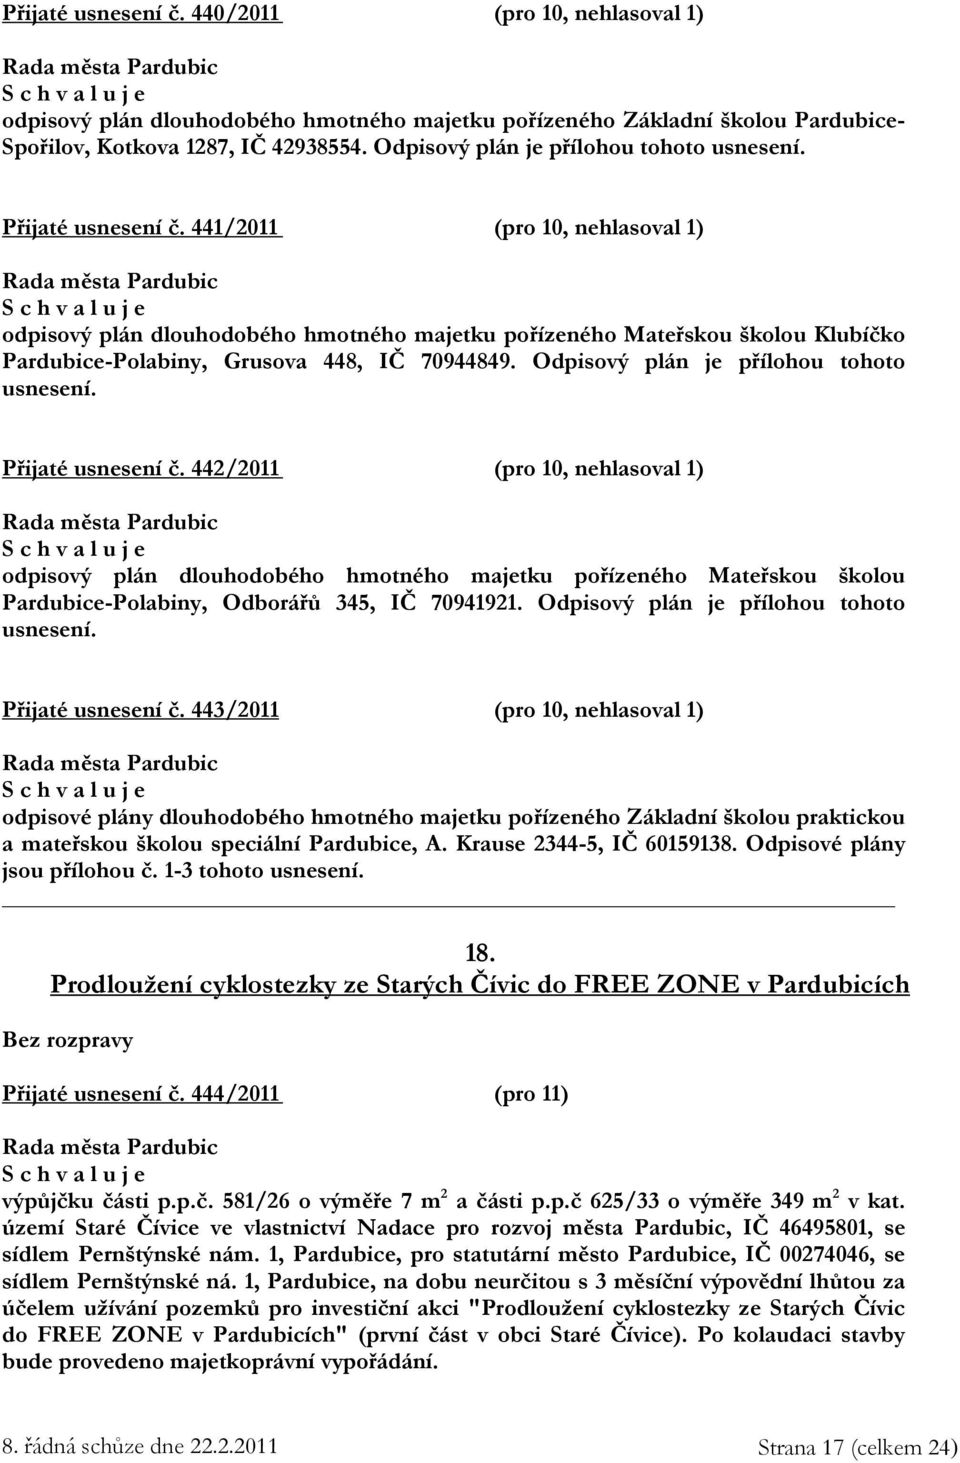 441/2011 (pro 10, nehlasoval 1) odpisový plán dlouhodobého hmotného majetku pořízeného Mateřskou školou Klubíčko Pardubice-Polabiny, Grusova 448, IČ 70944849.